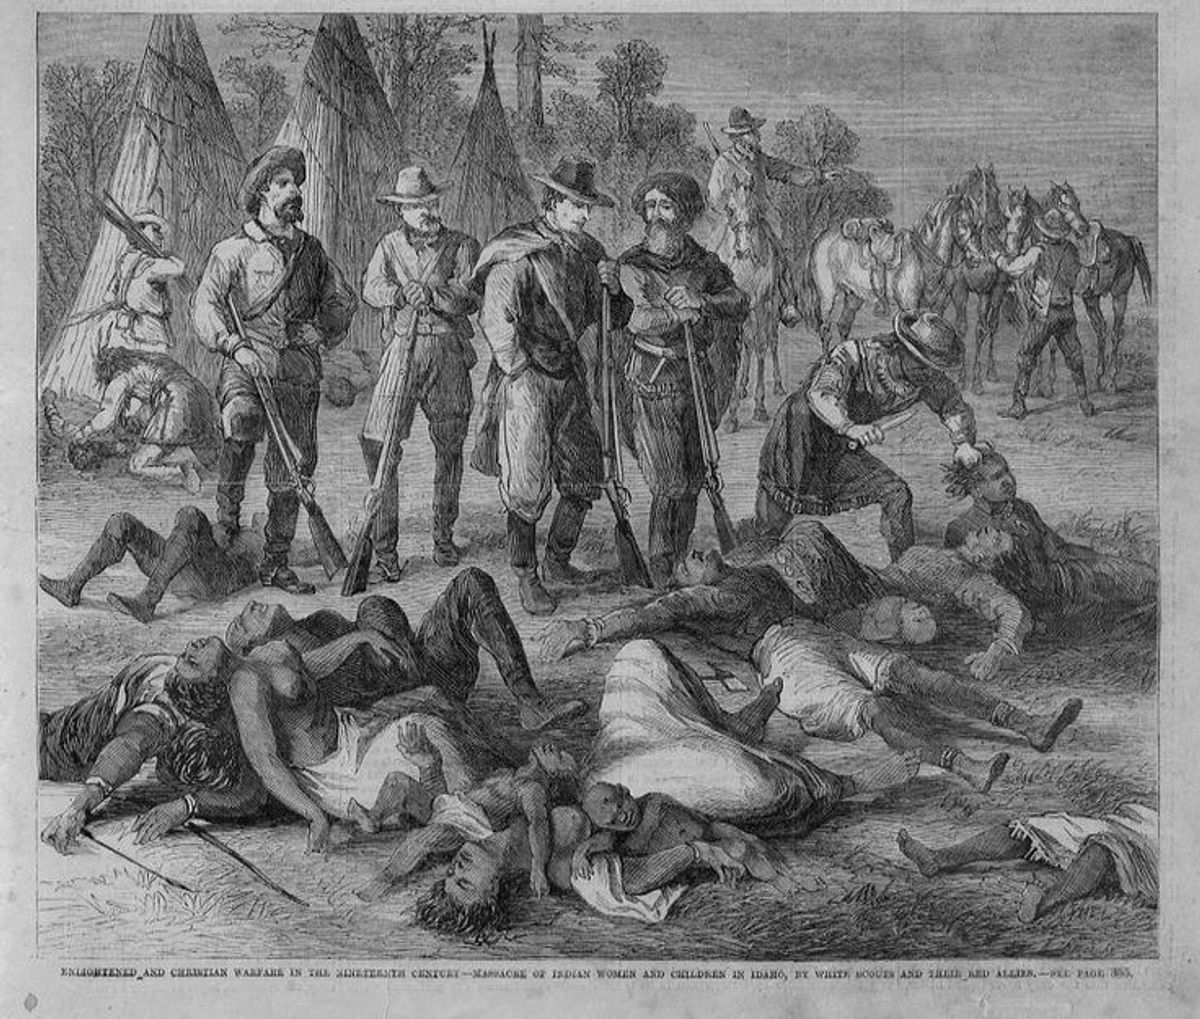 The Horrid Marias Massacre Of 1870